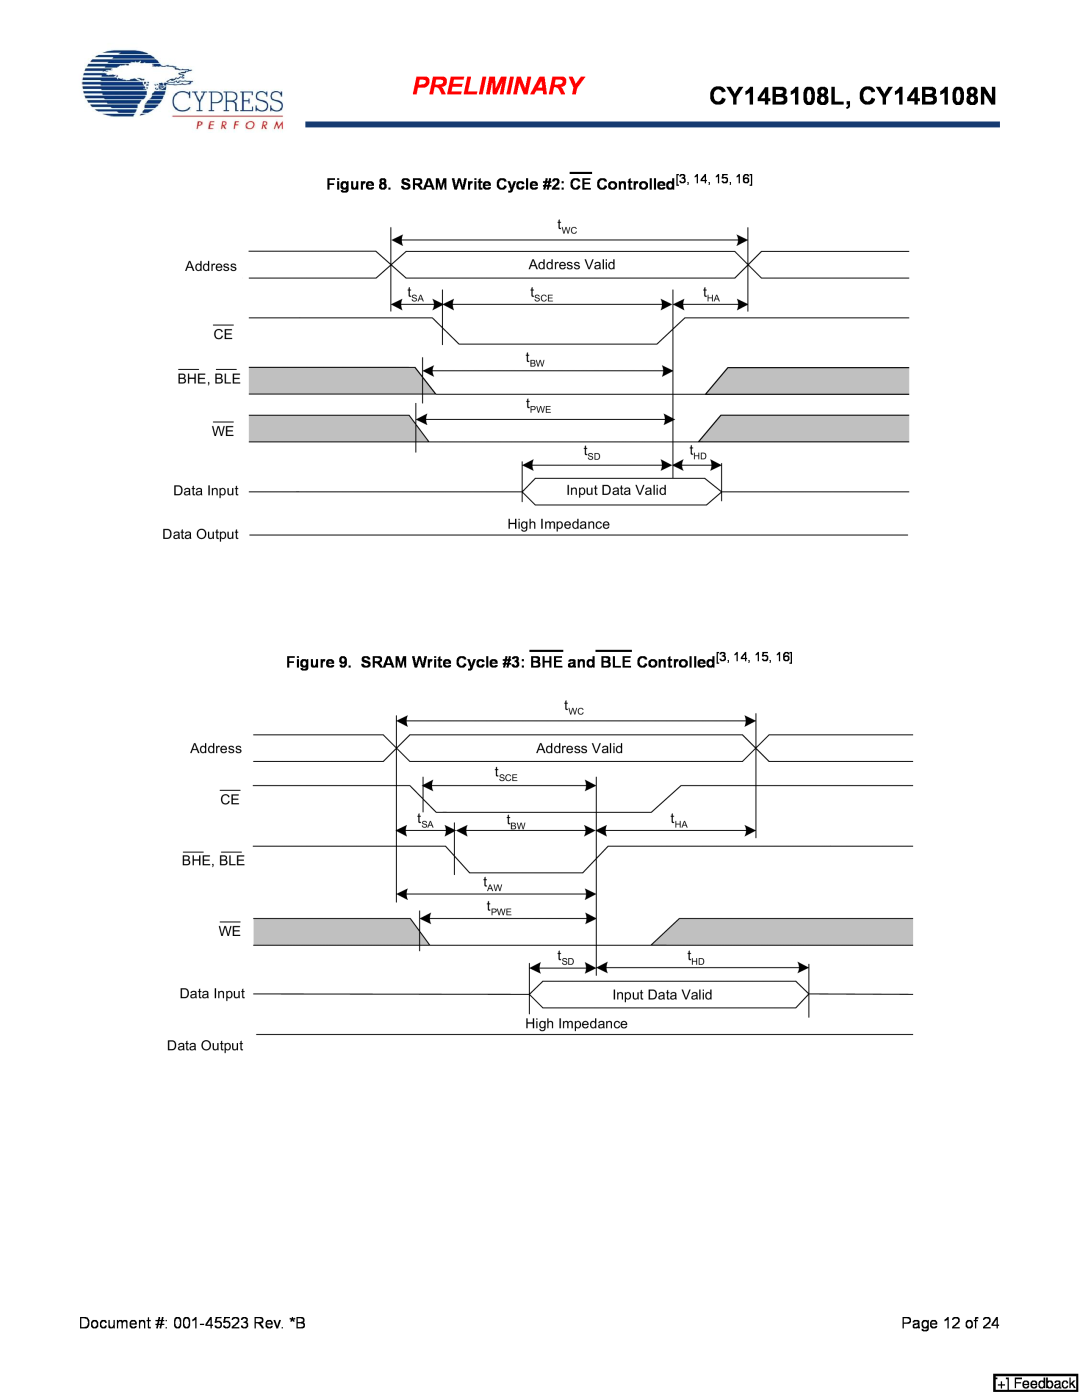 Cypress manual Preliminary, CY14B108L, CY14B108N, + Feedback, Controlled3, 14, 15 